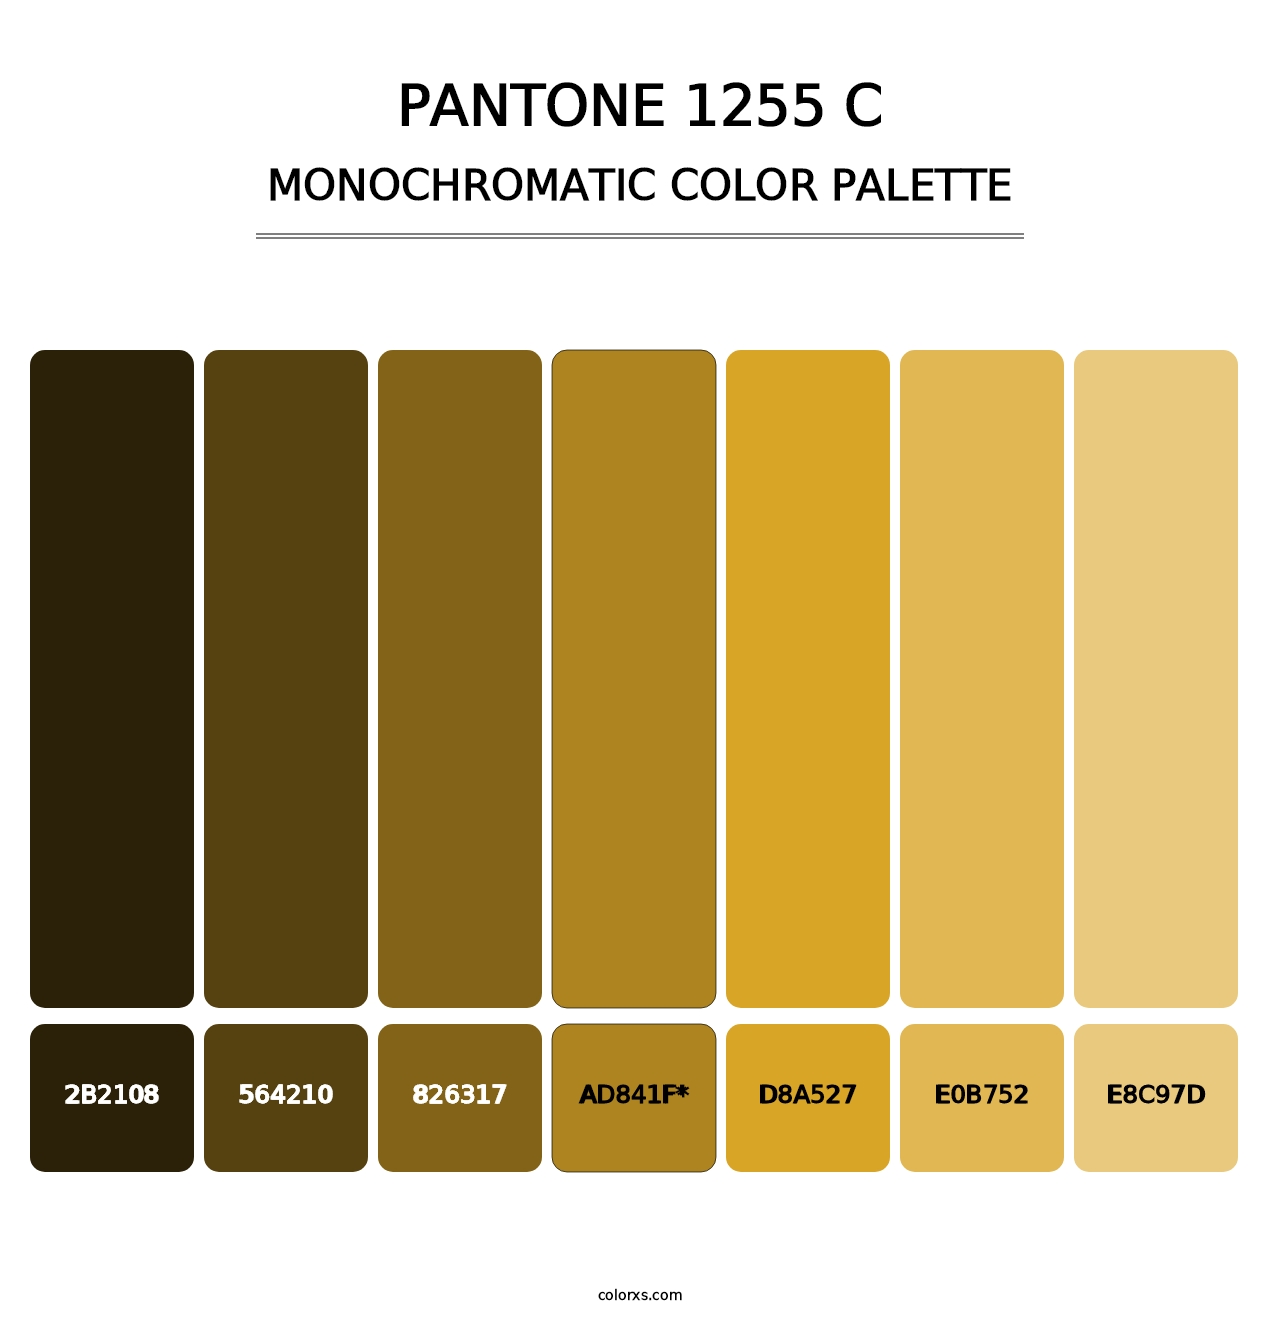 PANTONE 1255 C - Monochromatic Color Palette